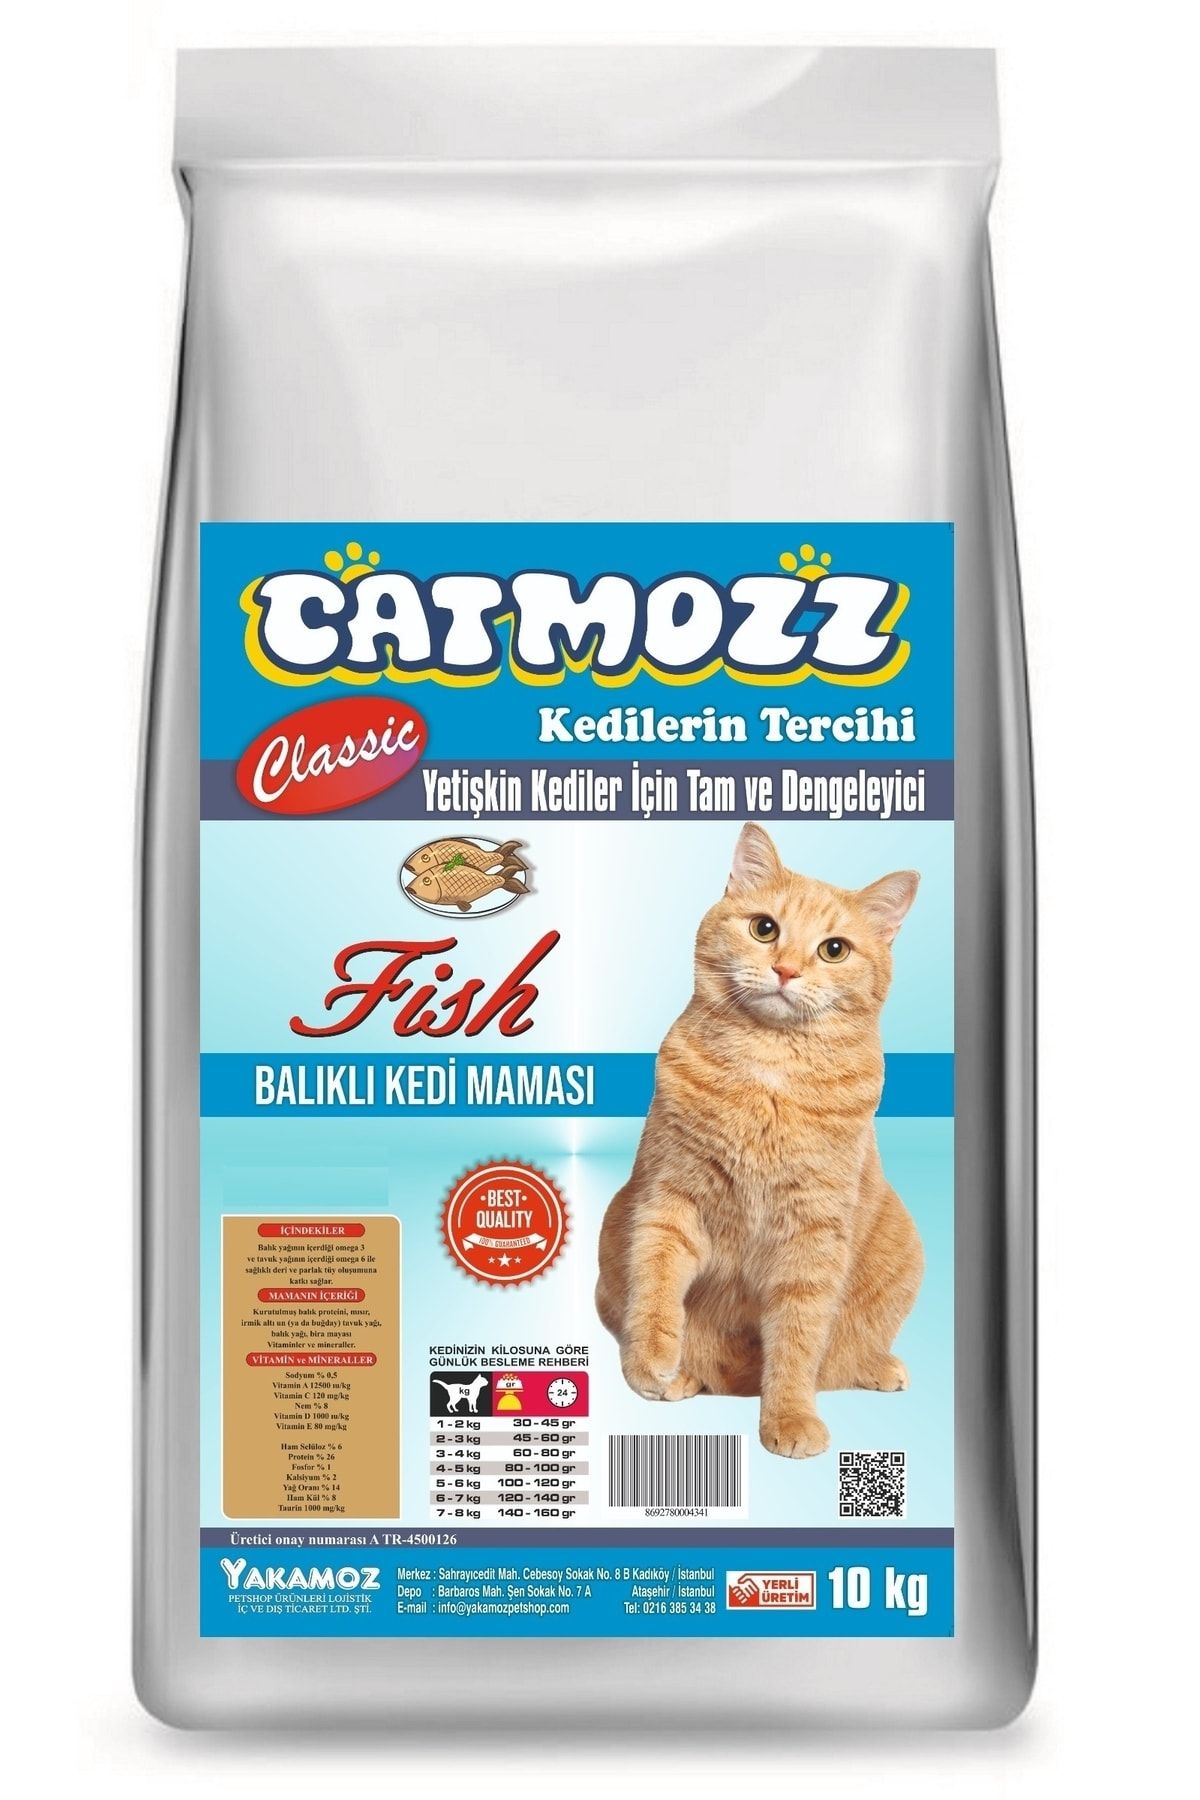 CatMozz Classic Balıklı Yetişkin Kedi Maması 10 Kg